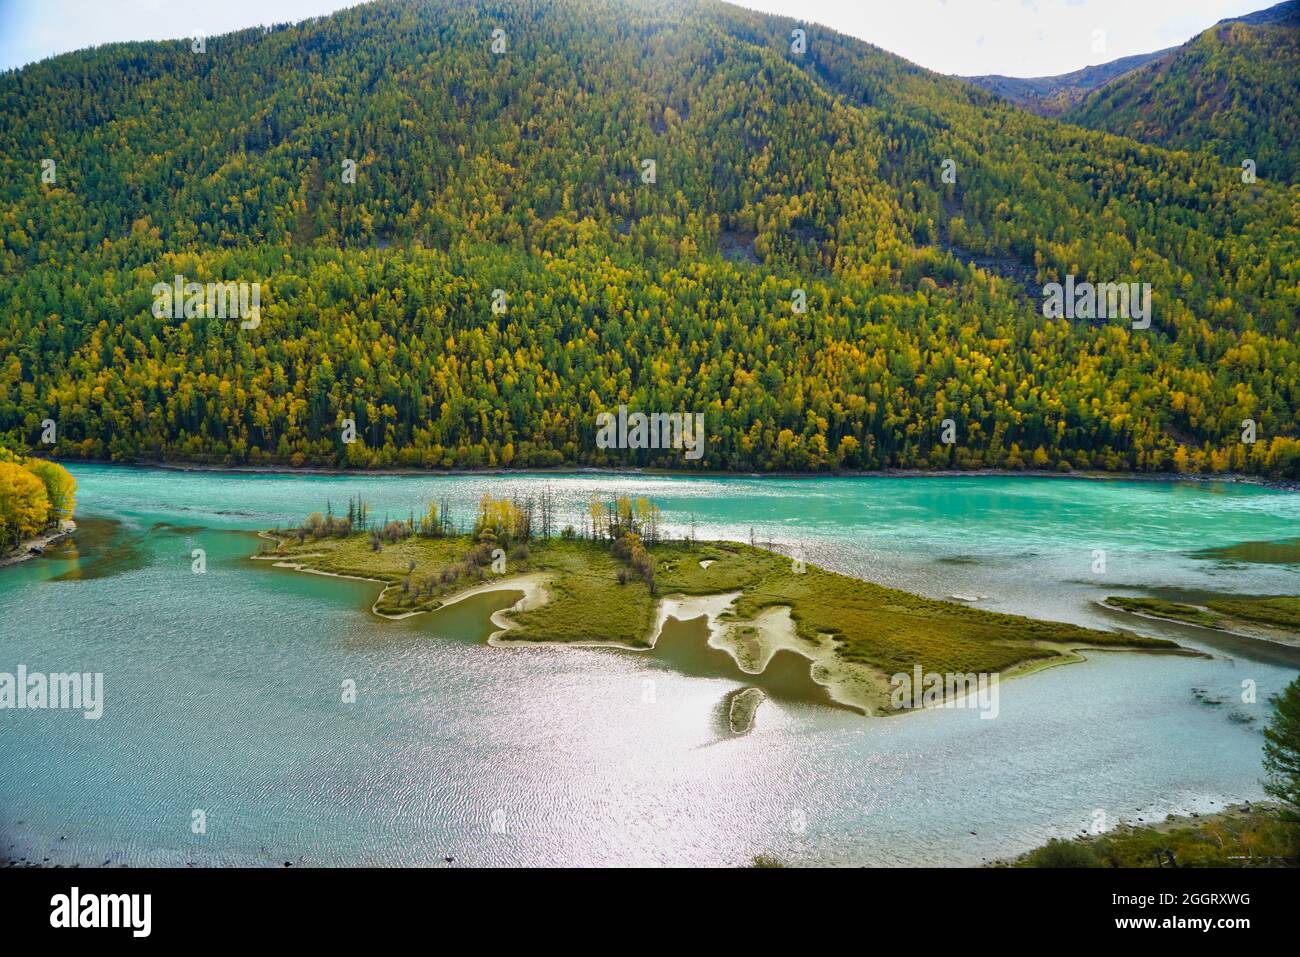 Baie de Wolong du lac Kanas. Rivière bleu cristal, petite sandbar.Green Tree collines. La beauté naturelle du paradis. Réserve naturelle de Kanas. Province de Xinjiang Banque D'Images